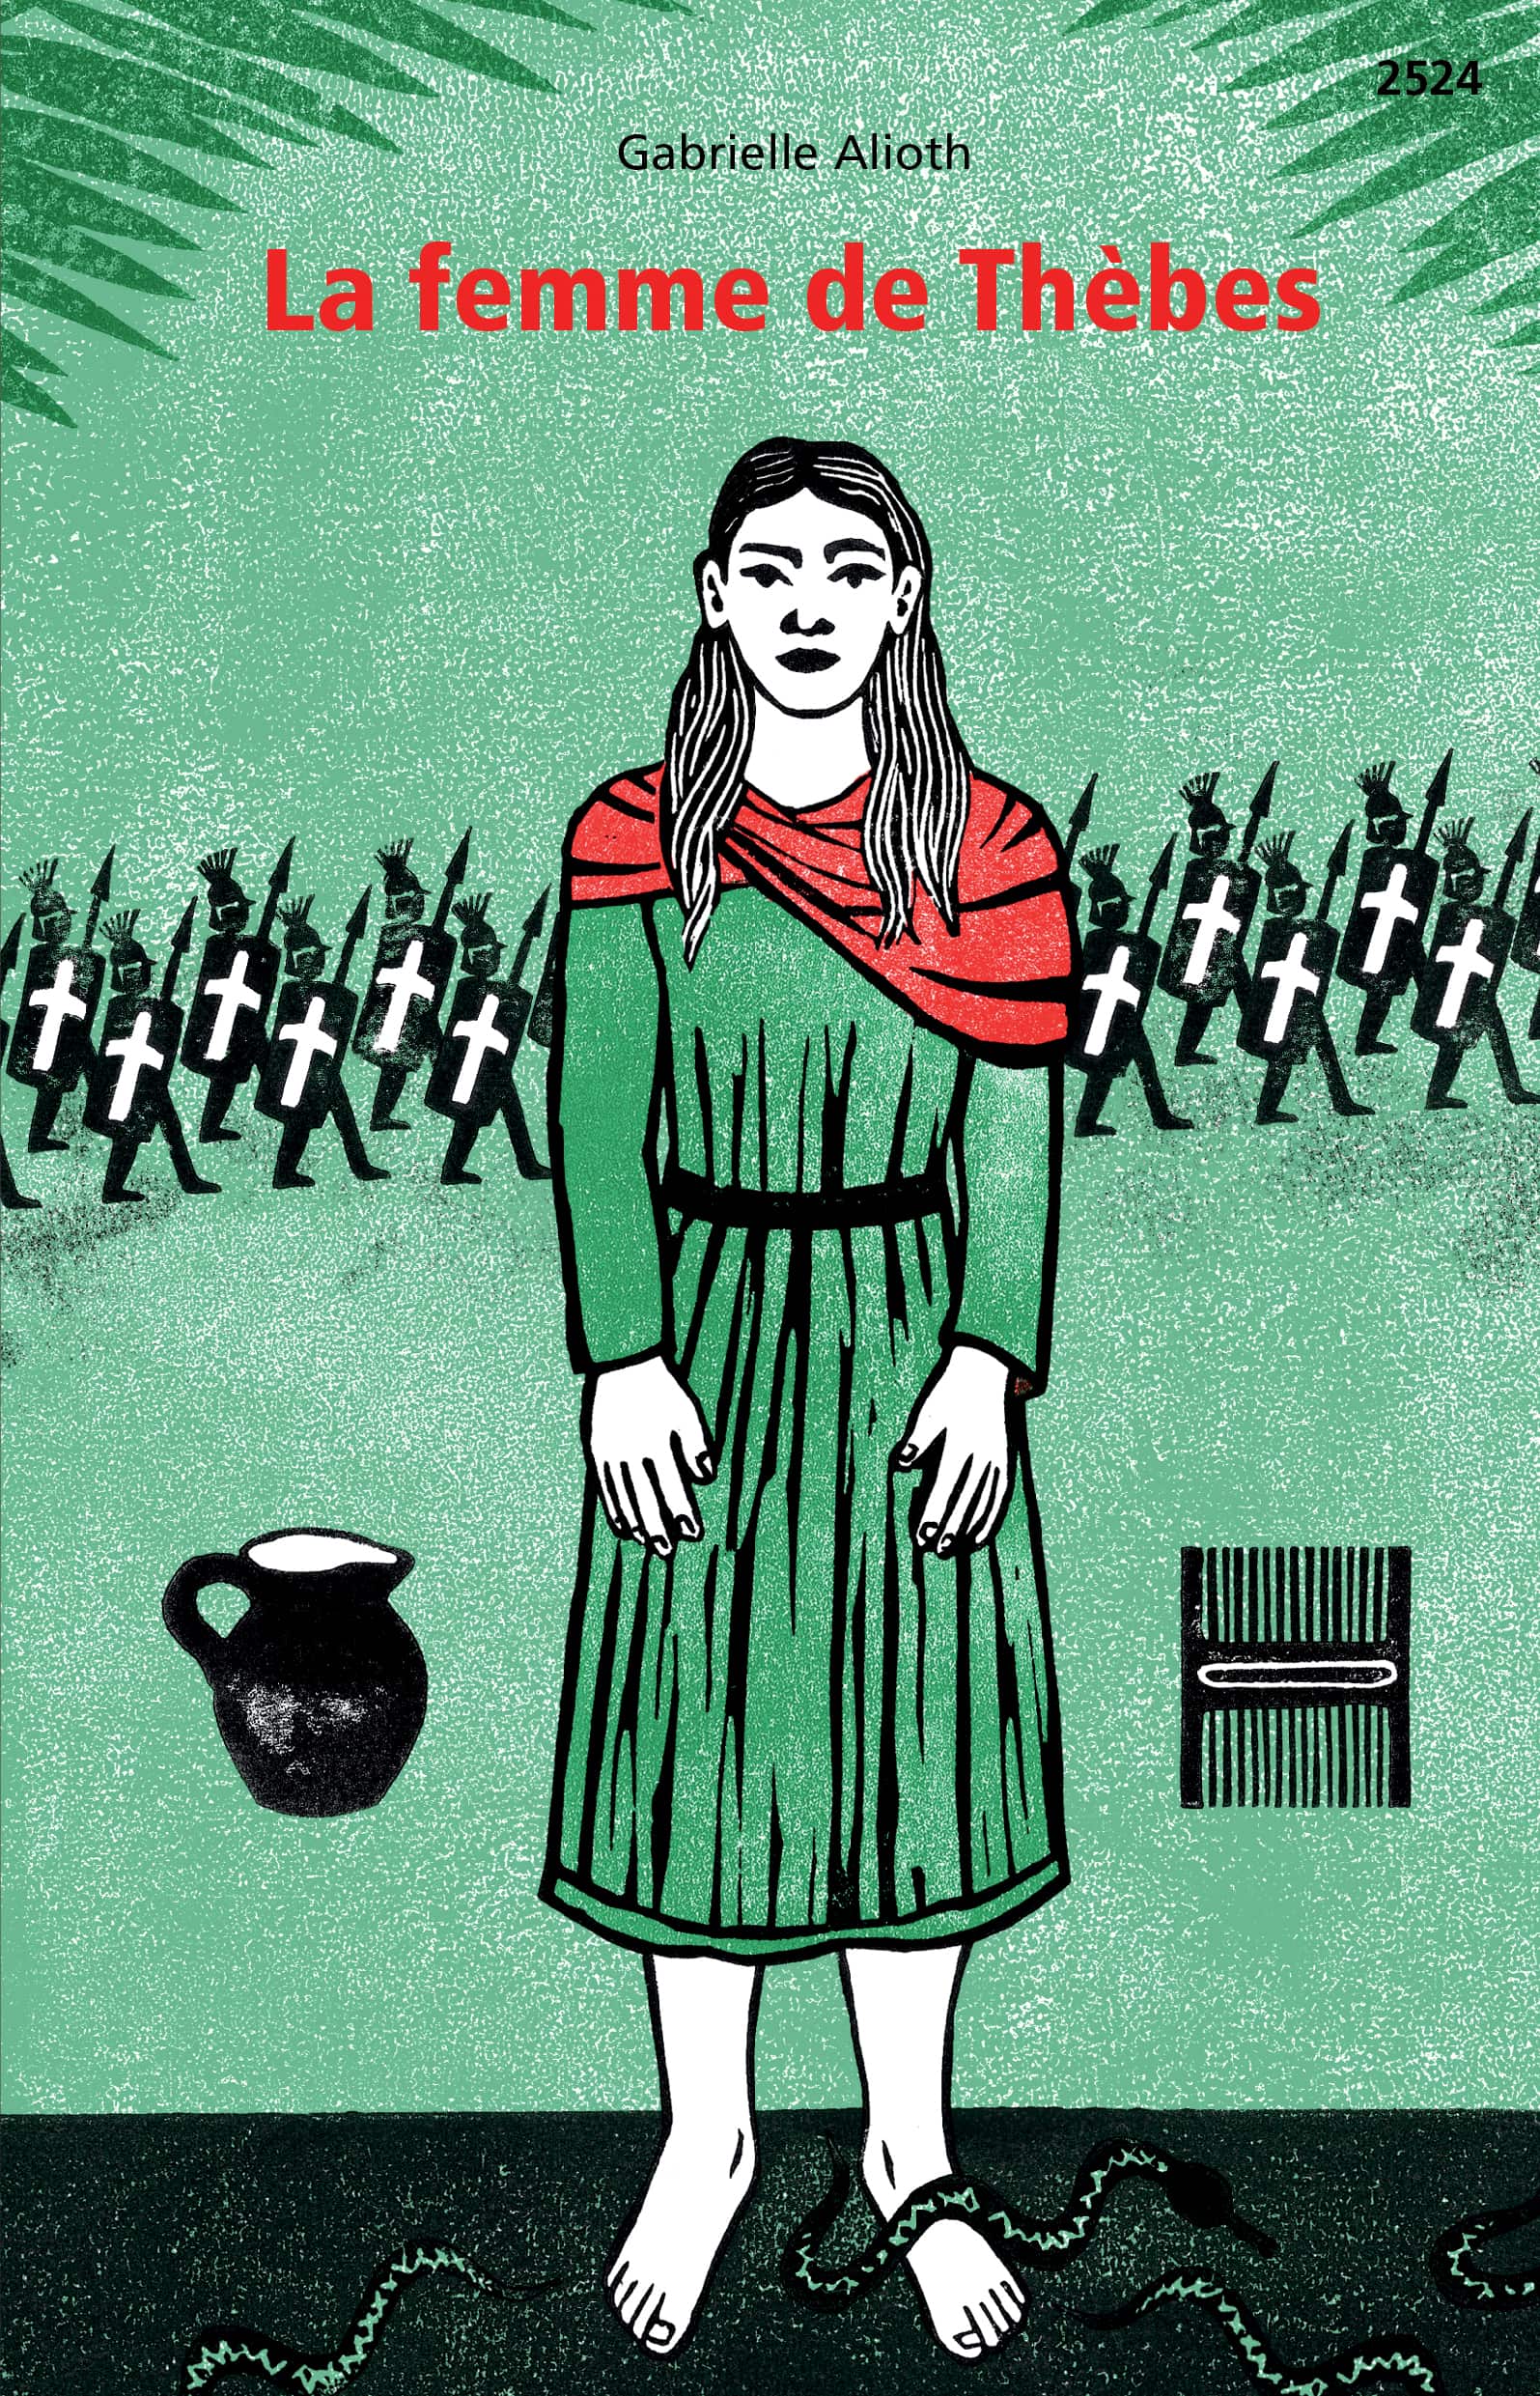 La femme de Thèbes, un livre de Gabrielle Alioth, illustré par Laura Jurt, éditions de l'OSL, histoire, religion, Suisse